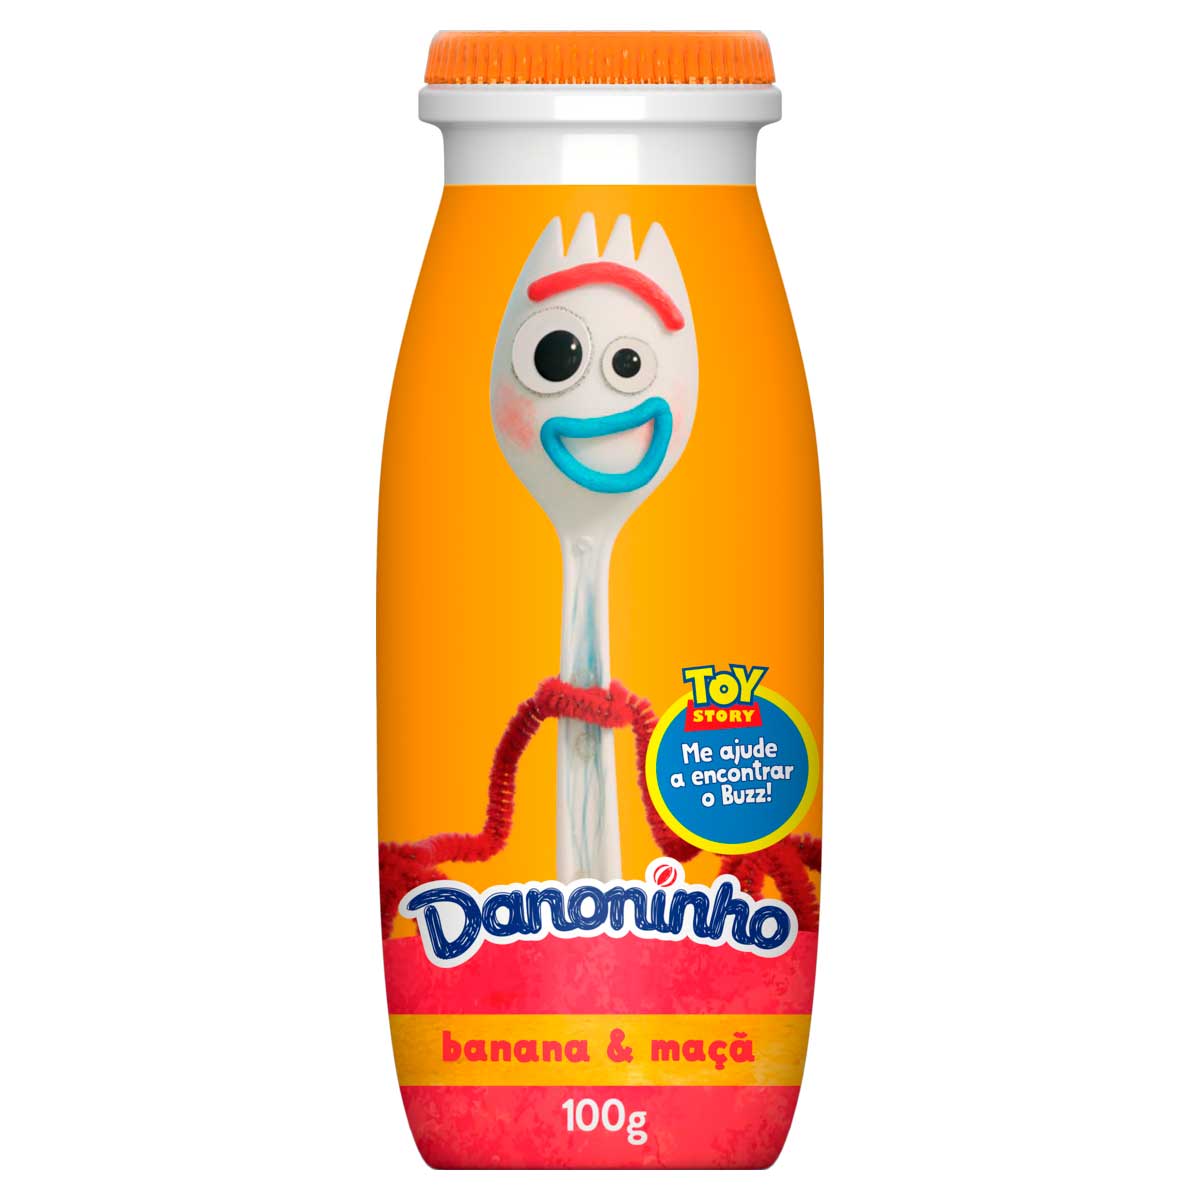 iogurte-danoninho-liquido-banana-e-maca-100g-1.jpg